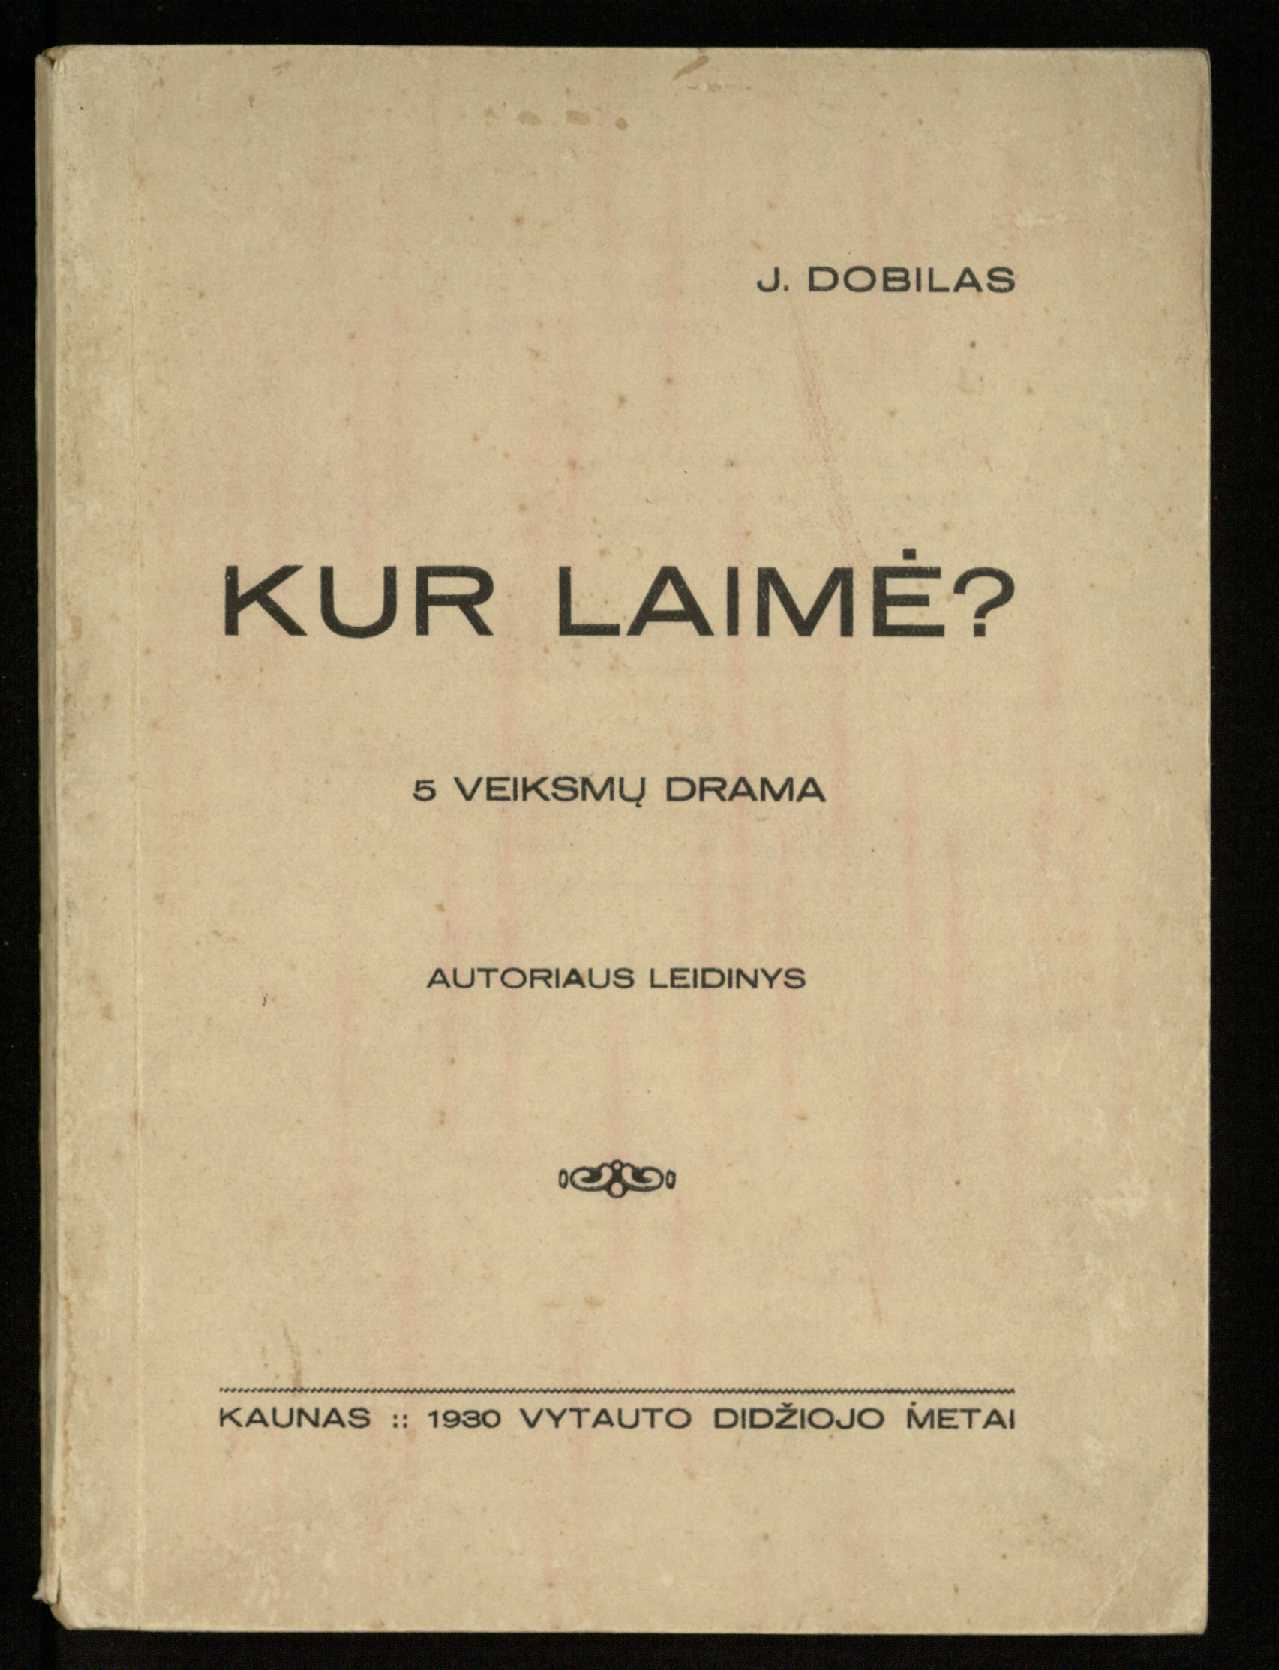 Kur laimė? : 5 veiksmų drama / J. Dobilas. – Kaunas: autoriaus leidinys, 1930. – 165, [1] p.